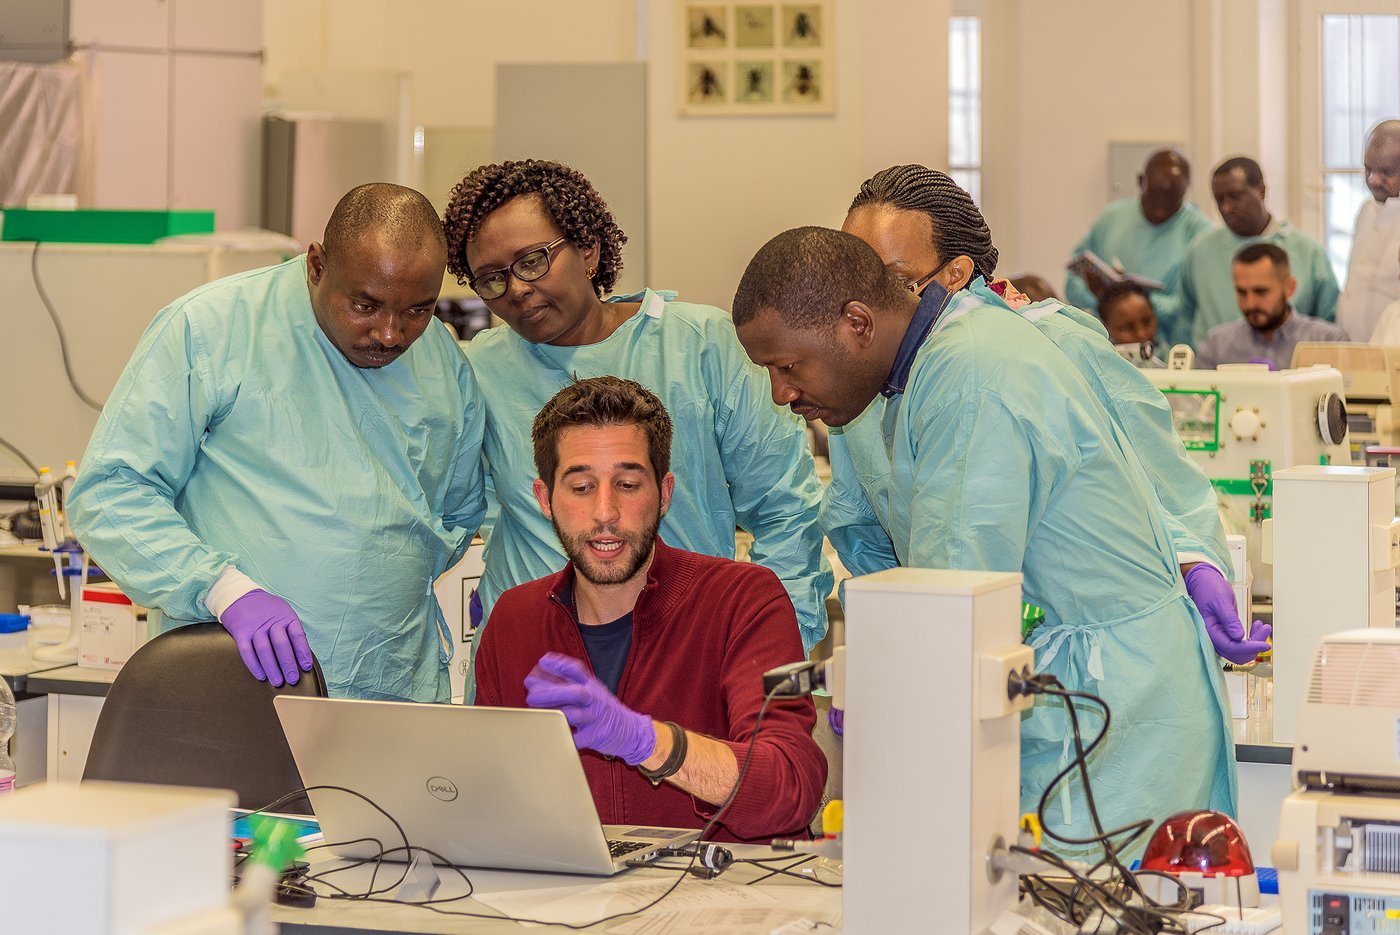 Gruppe von Forschern in einem Labor in Laborkleidung, die einen weiteren Forscher und seine Laptop umringen,während dieser ihnen etwas erklärt.